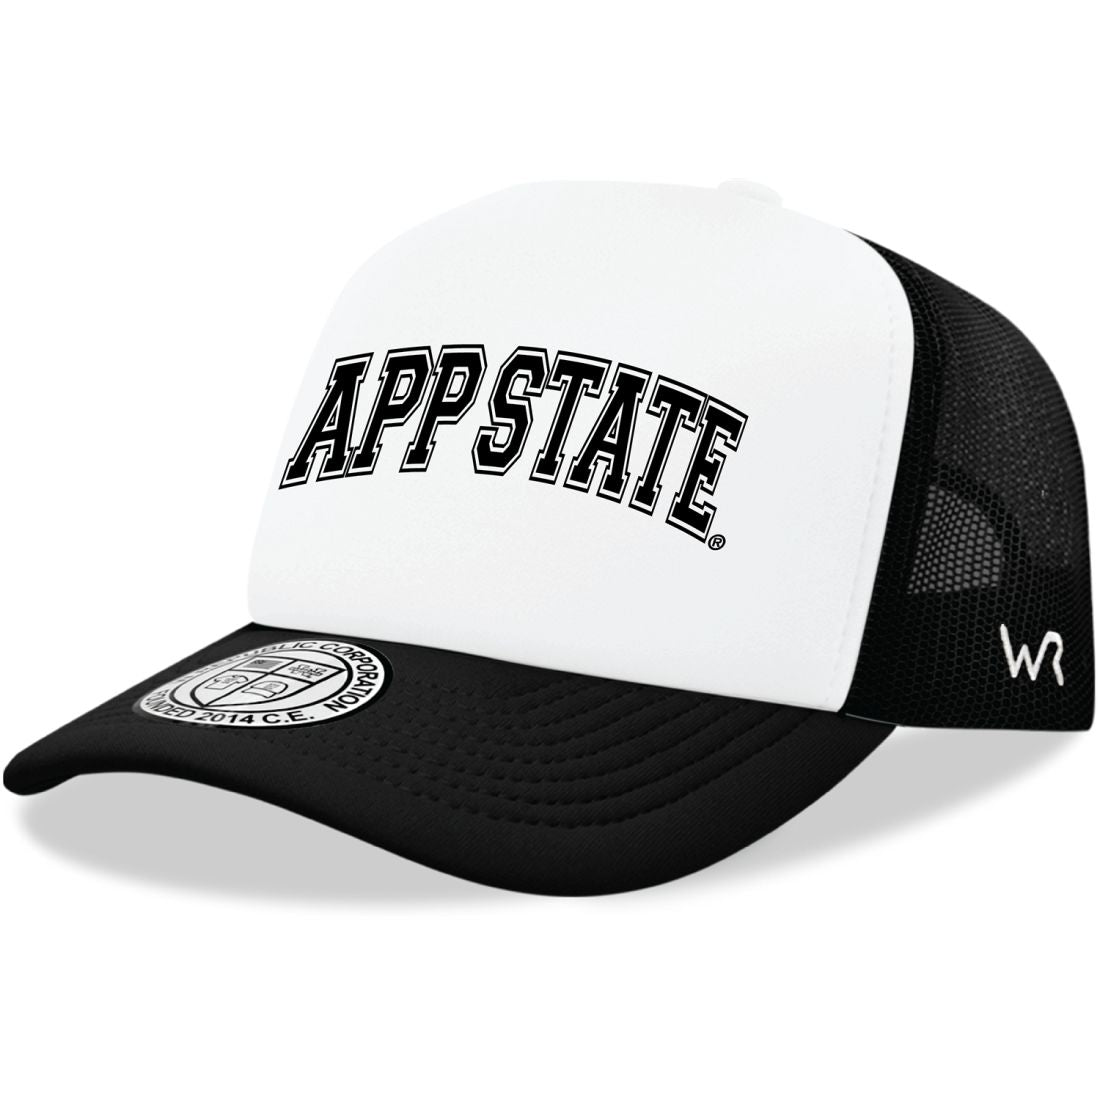 Appalachian App State University Mountaineers Practice Foam Trucker Hats